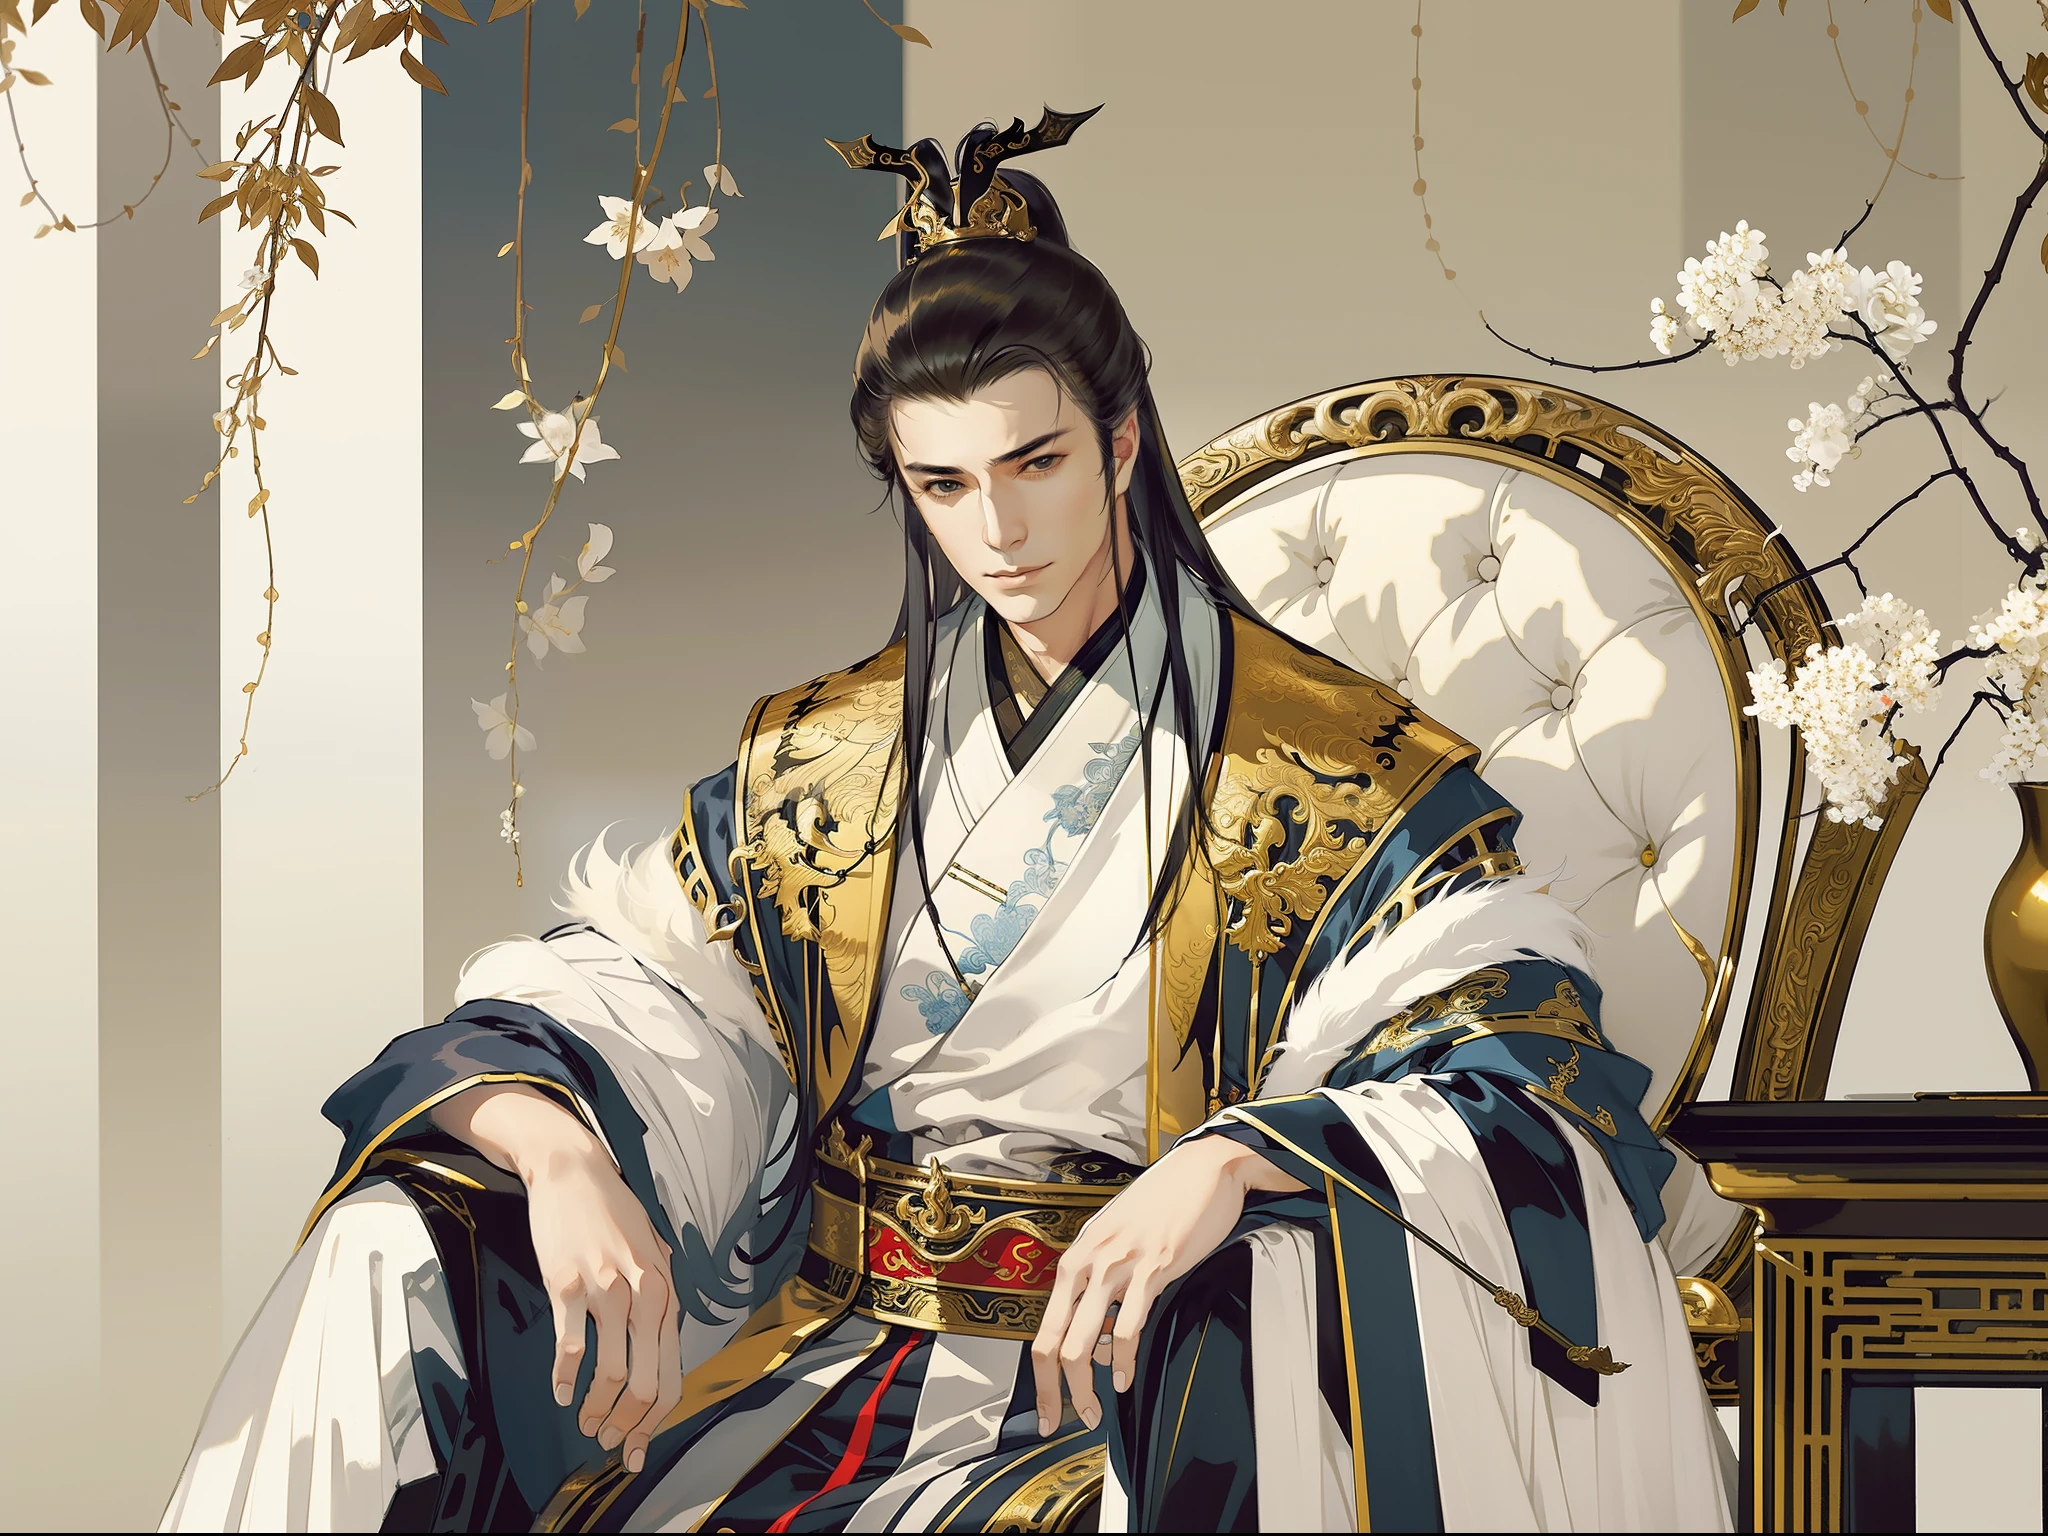 古代中国のハンサムな男性, きりっとした目, はっきりとした顔立ち, 漢服を着て, 玉座に座る, 空の宮殿, 王様気質, 全身ポートレート, クリアな顔, 美しい目, 傑作, 非常に詳細な, 壮大な構成, スーパーHD, 高品質, 最高品質, 32K